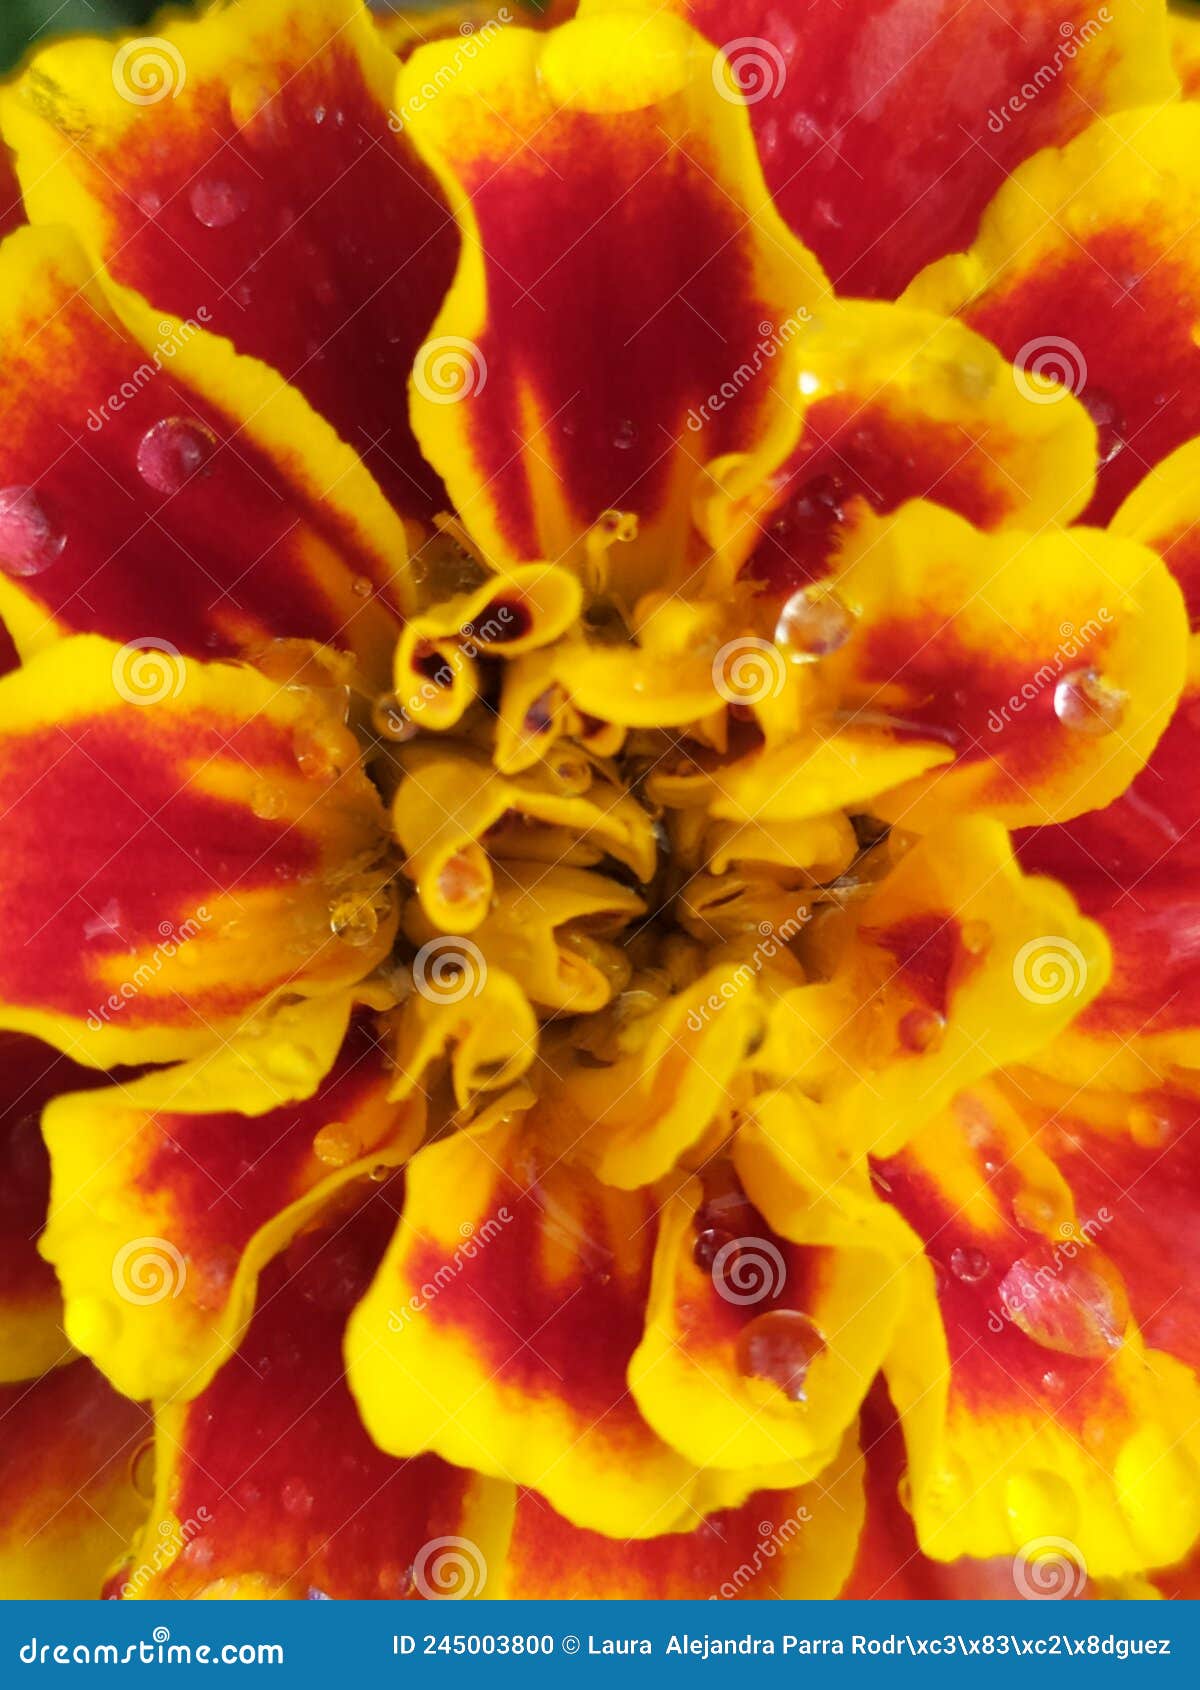 alyssum flower red and yellow in the garden freshly watered. flor de tagete color amarillo y rojo, en el jardÃÂ­n.